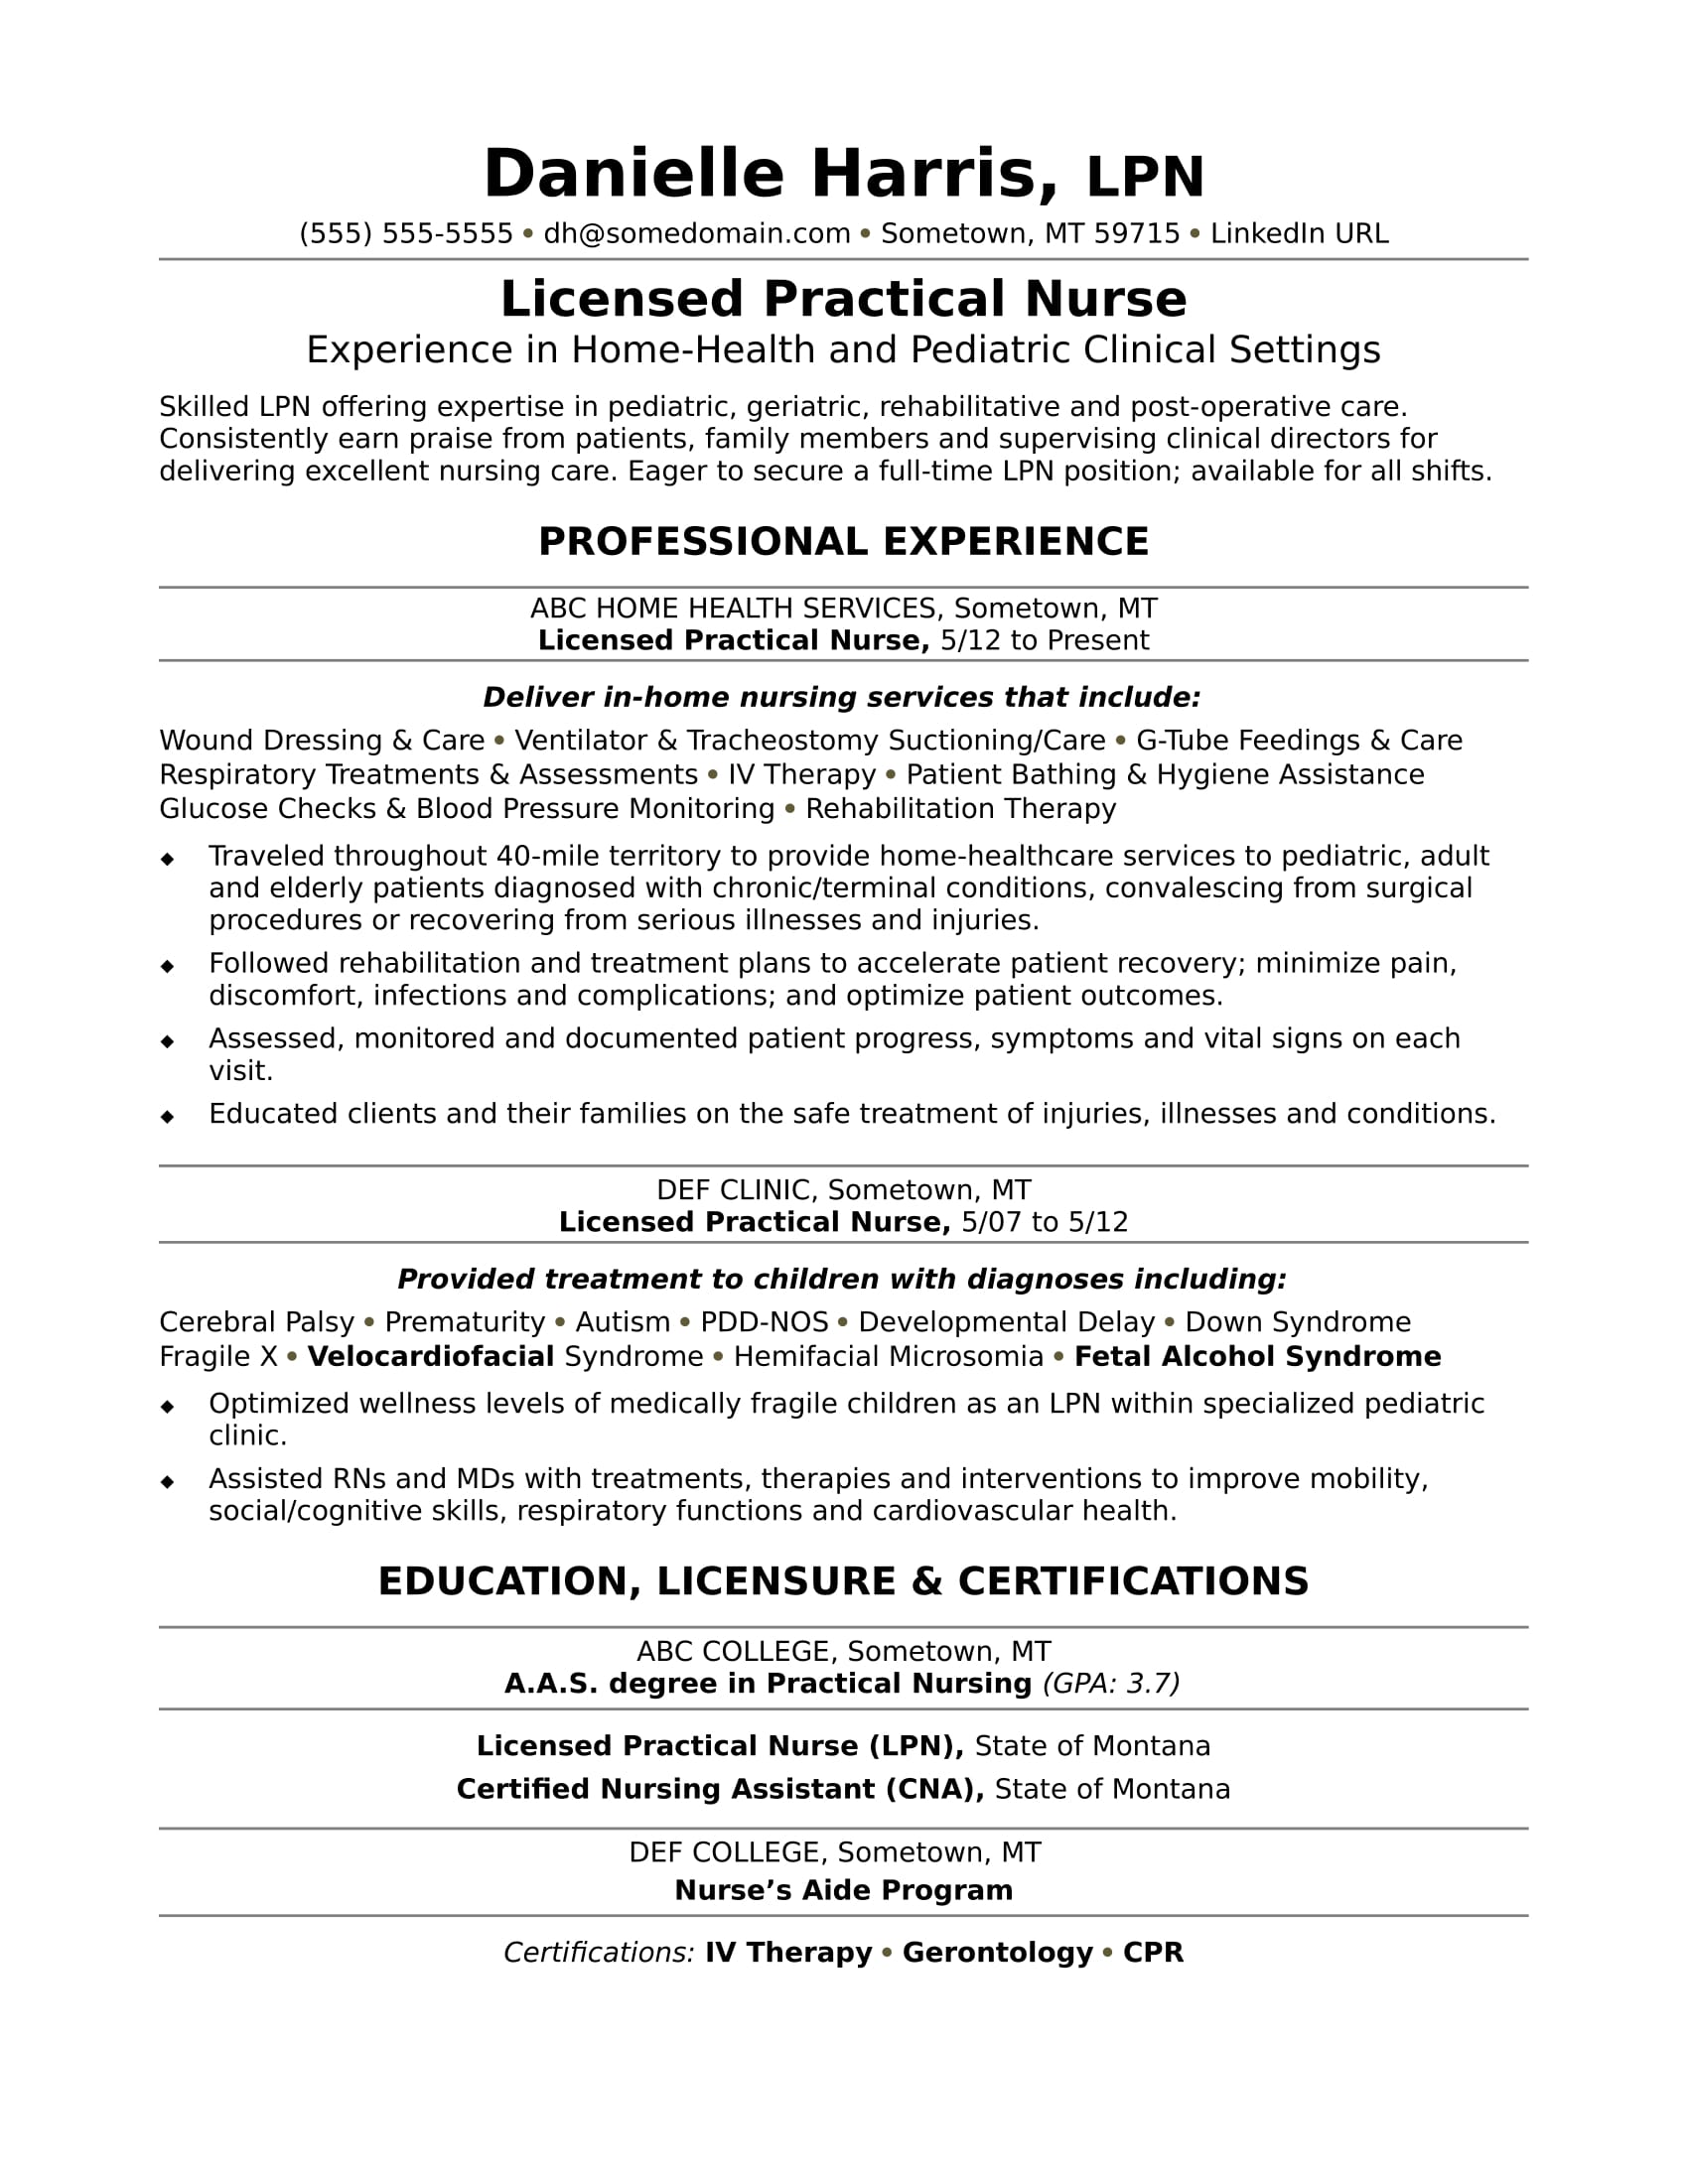 Licensed Practical Nurse Resume Sample | Monster.com